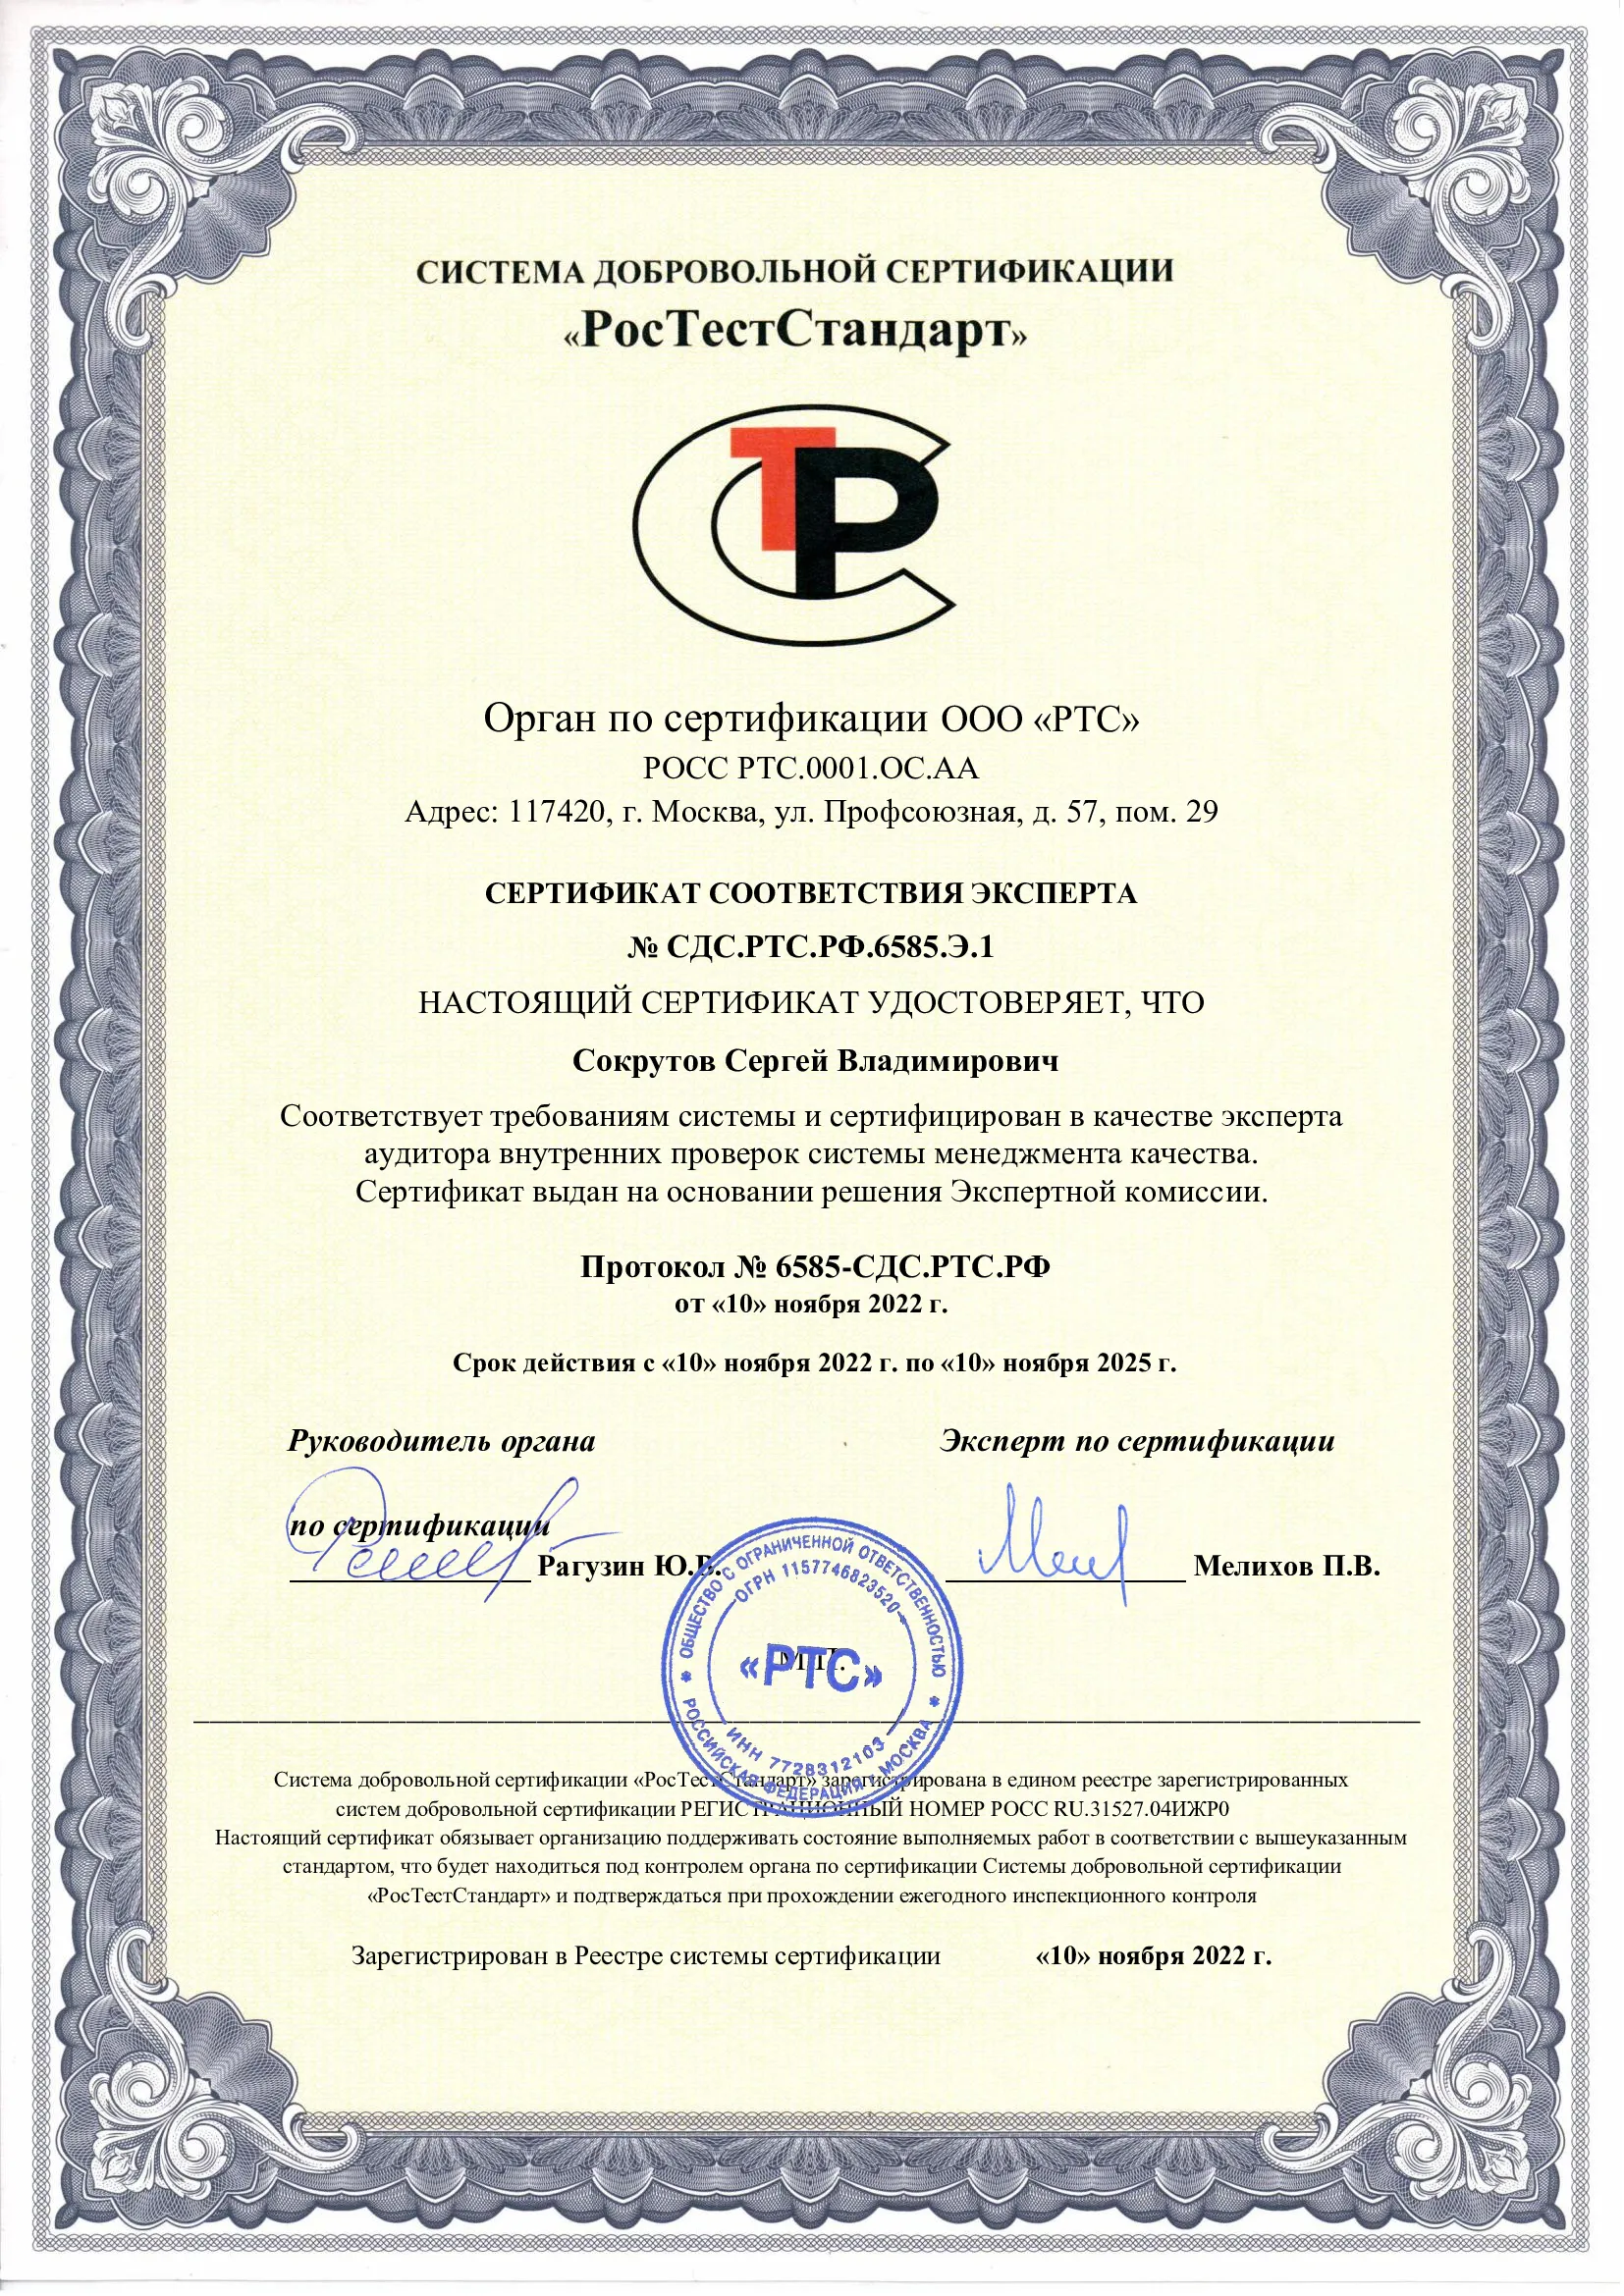 Сертификат РосТестСтандарт "Соответствия эксперта"